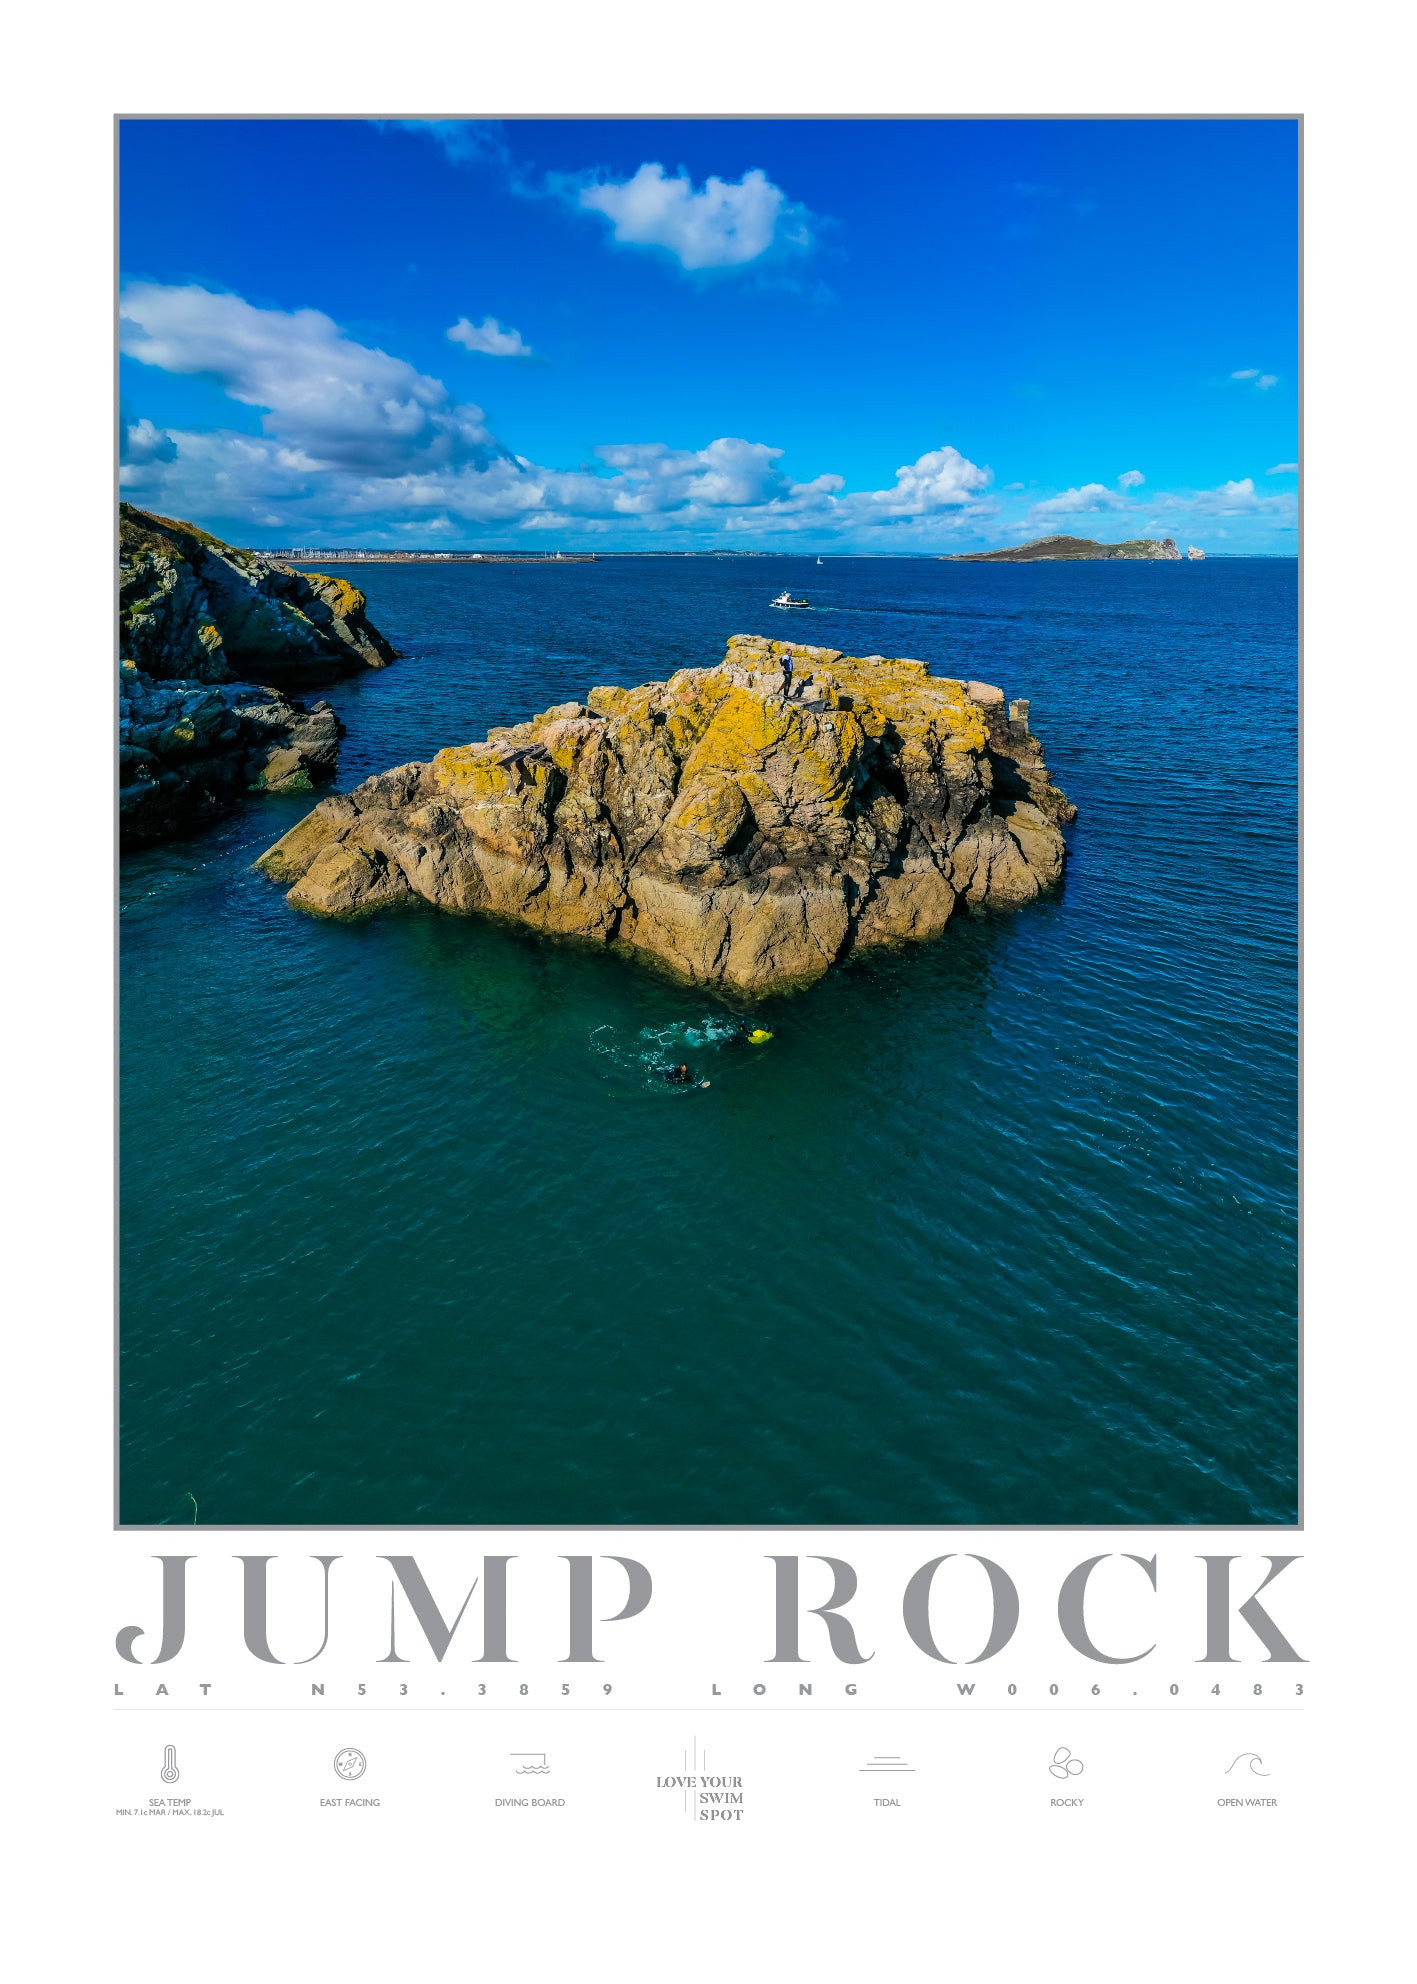 JUMP ROCK HOWTH CO DUBLIN